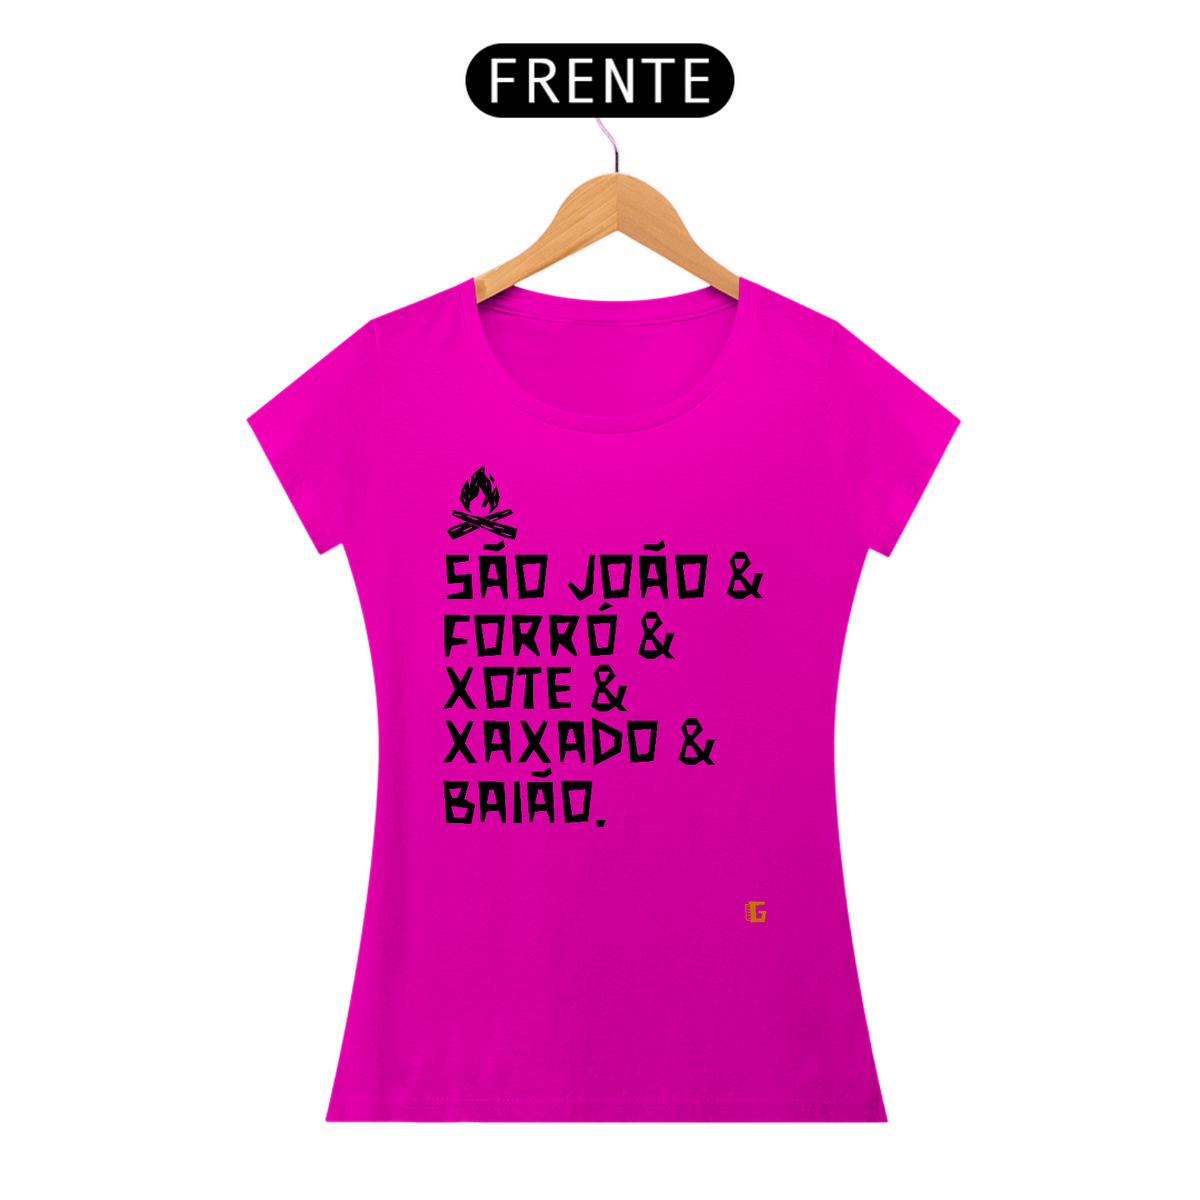 Nome do produto: Camisa Feminina São João & Forró - Texto Preto